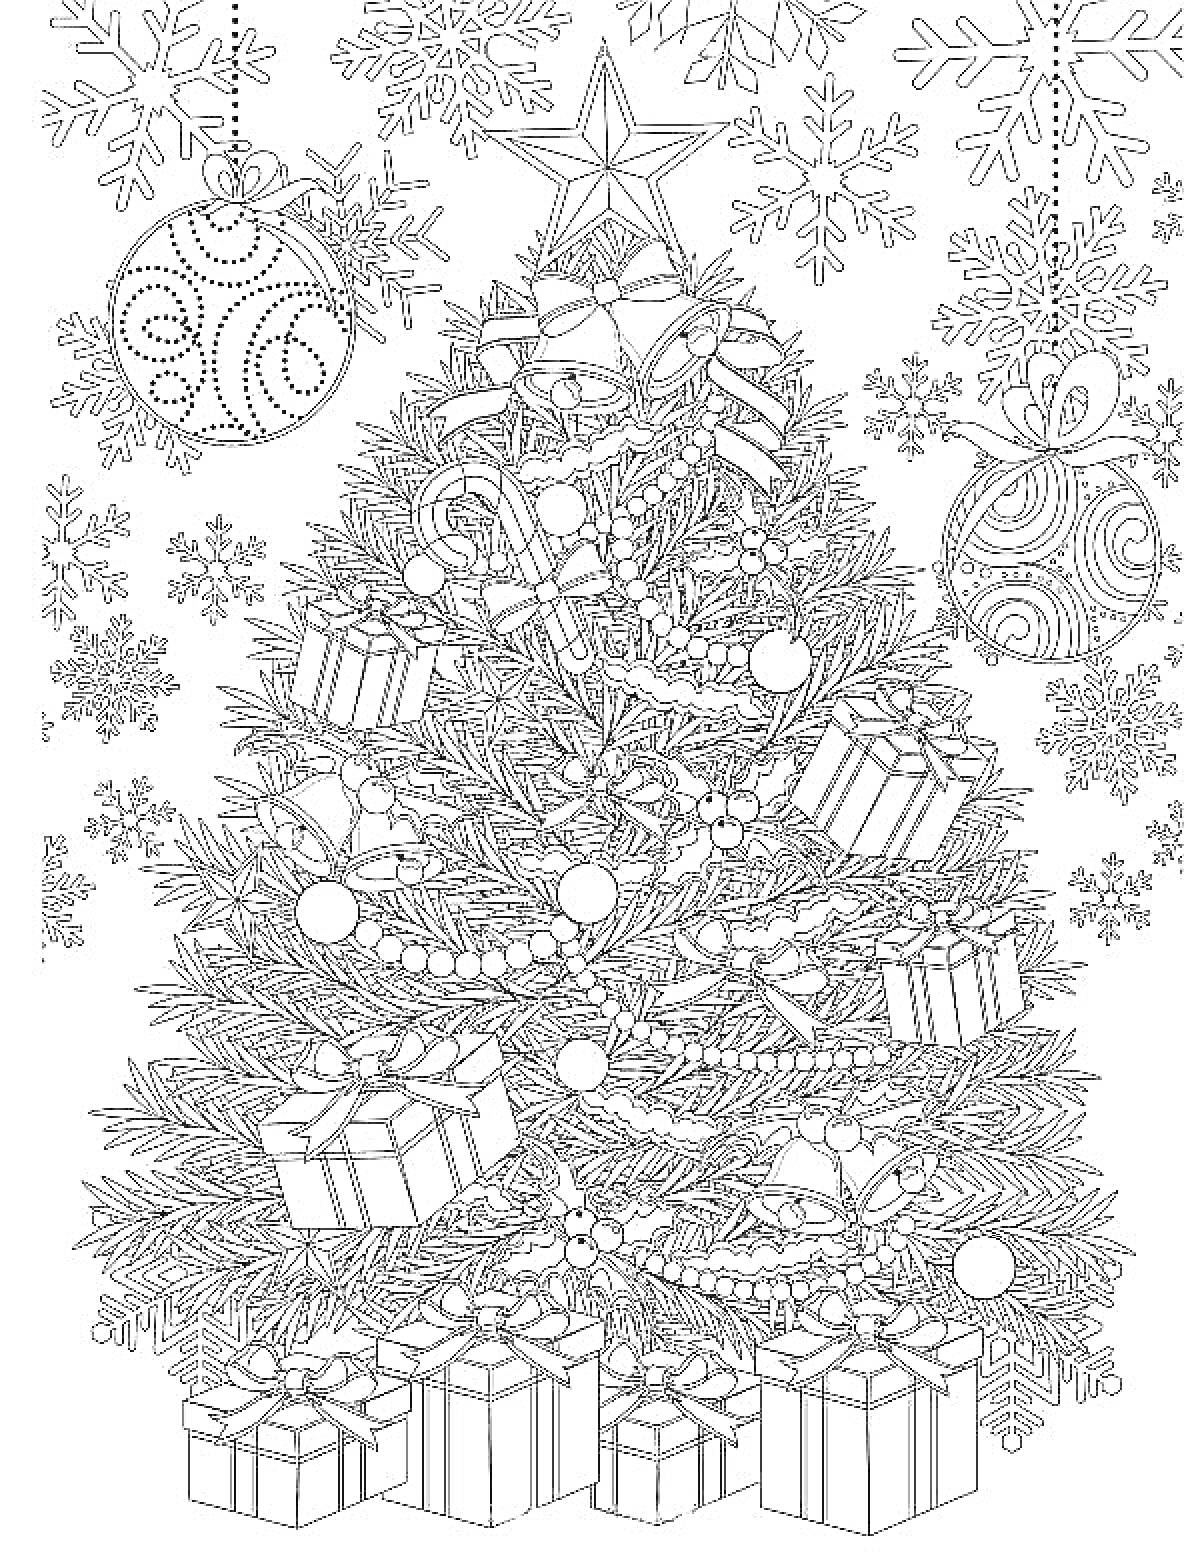 Раскраска Новогодняя елка с подарками, шарами, снежинками и звездой на верхушке